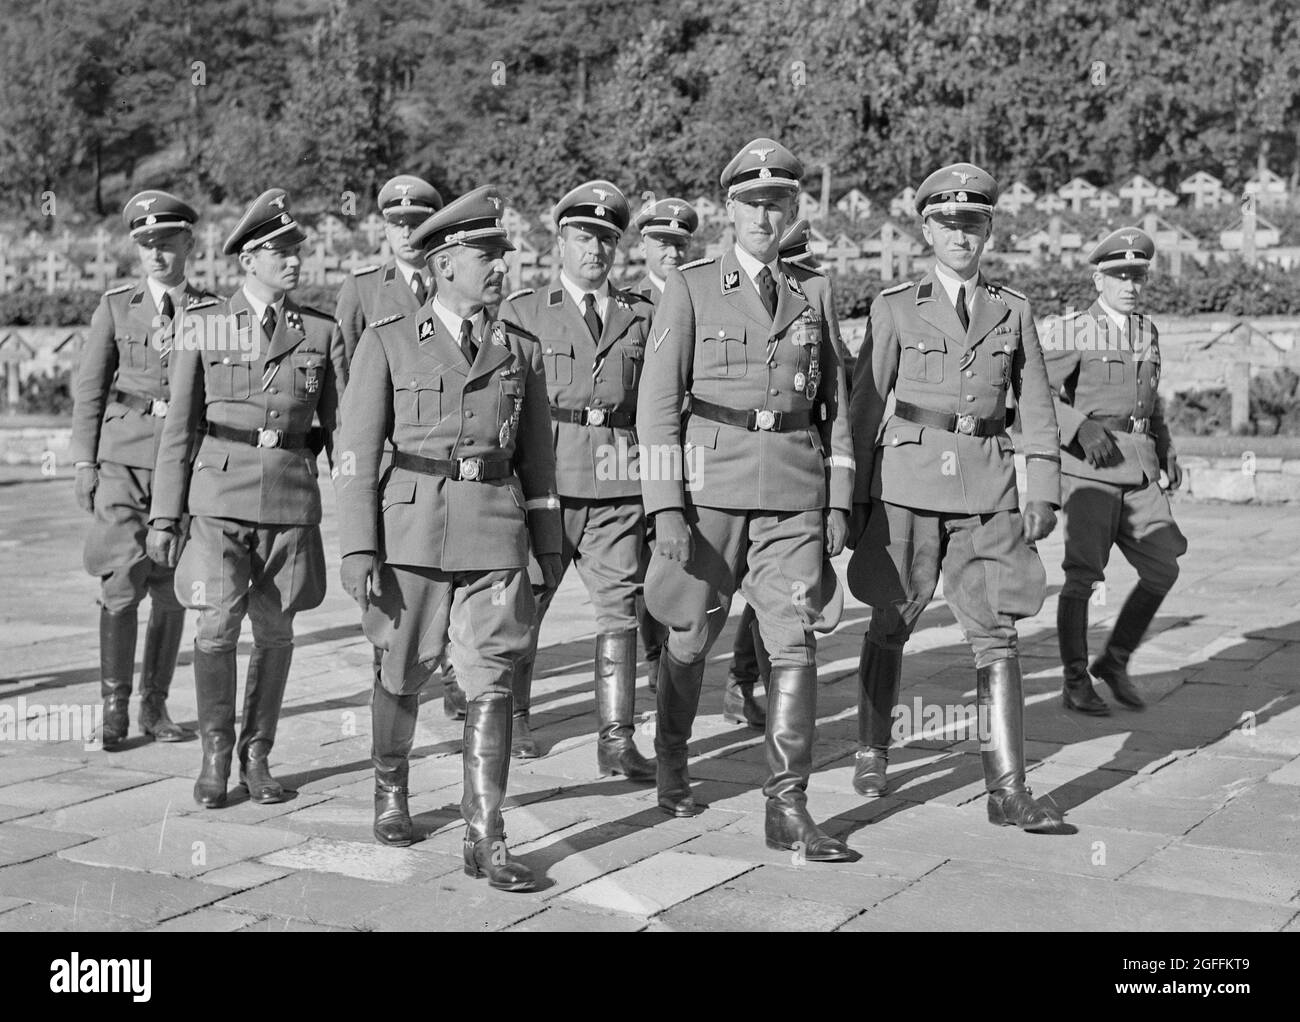 Reinhard Heydrich avec un groupe de soldats SS de haut rang au cimetière Ekeberg pour les soldats allemands à Oslo lors de sa visite en Norvège du 3-6 septembre 1941. Heydrich était un SS-Obergruppenführer et général de police ainsi que le chef du bureau principal de sécurité de Reich RSHA (y compris le Gestapo, Kripo et SD). Heydrich marchant devant SS-Brigadeführer Heinrich Müller (chef de la Gestapo) à sa droite et SS-Oberführer Heinrich Fehlis (chef de SD et Sipo en Norvège) à sa gauche. Banque D'Images